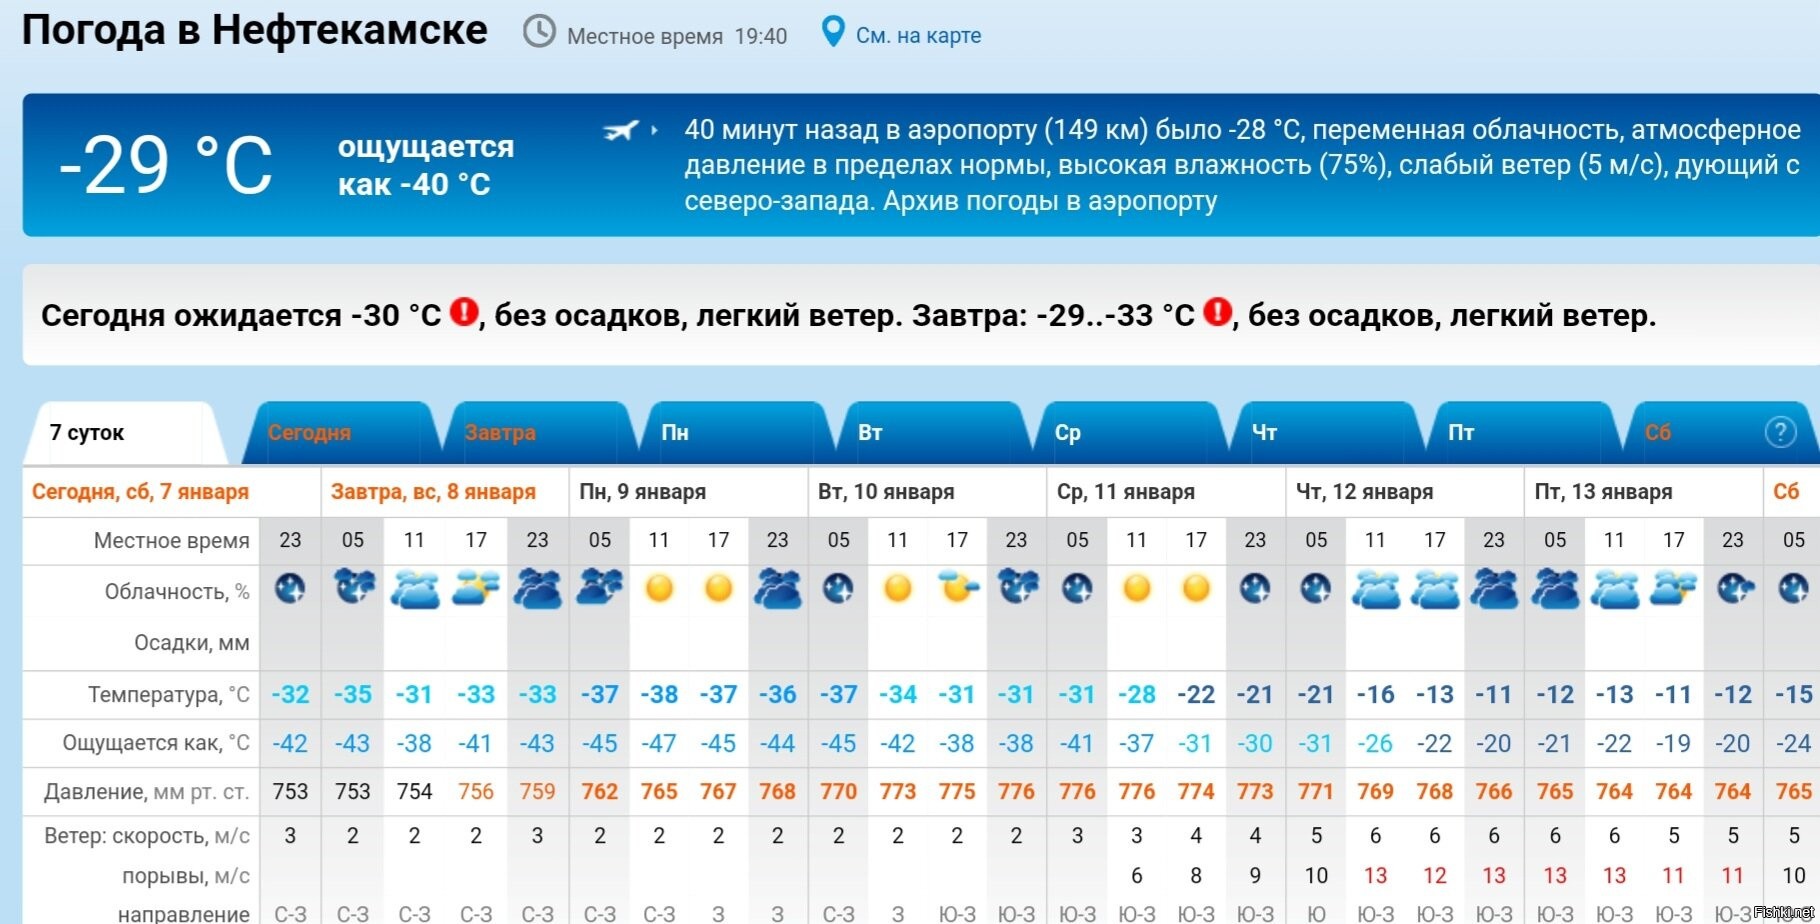 Погода рп5 спасск приморский край. Якутия температура. Якутск самая низкая температура. Самая низкая температура в яку. Якутск температура.